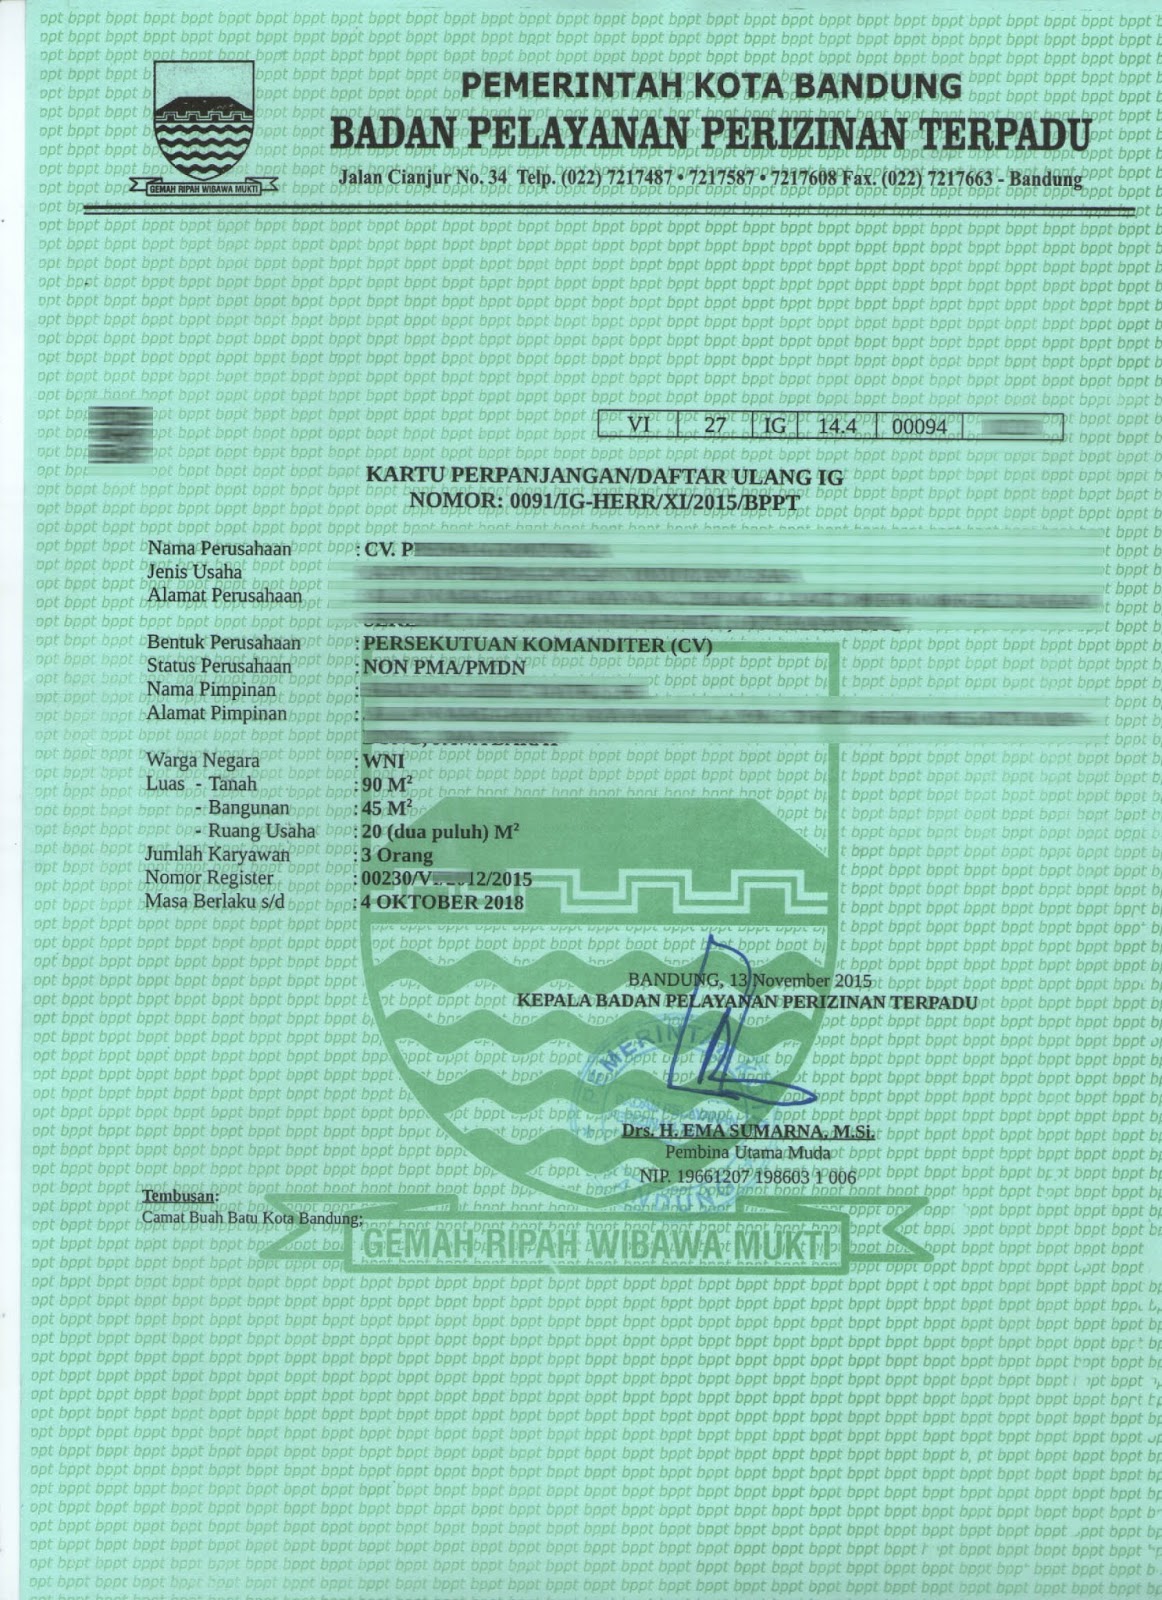 Info Pengurusan, syarat dan proses pendaftaran HO /Surat